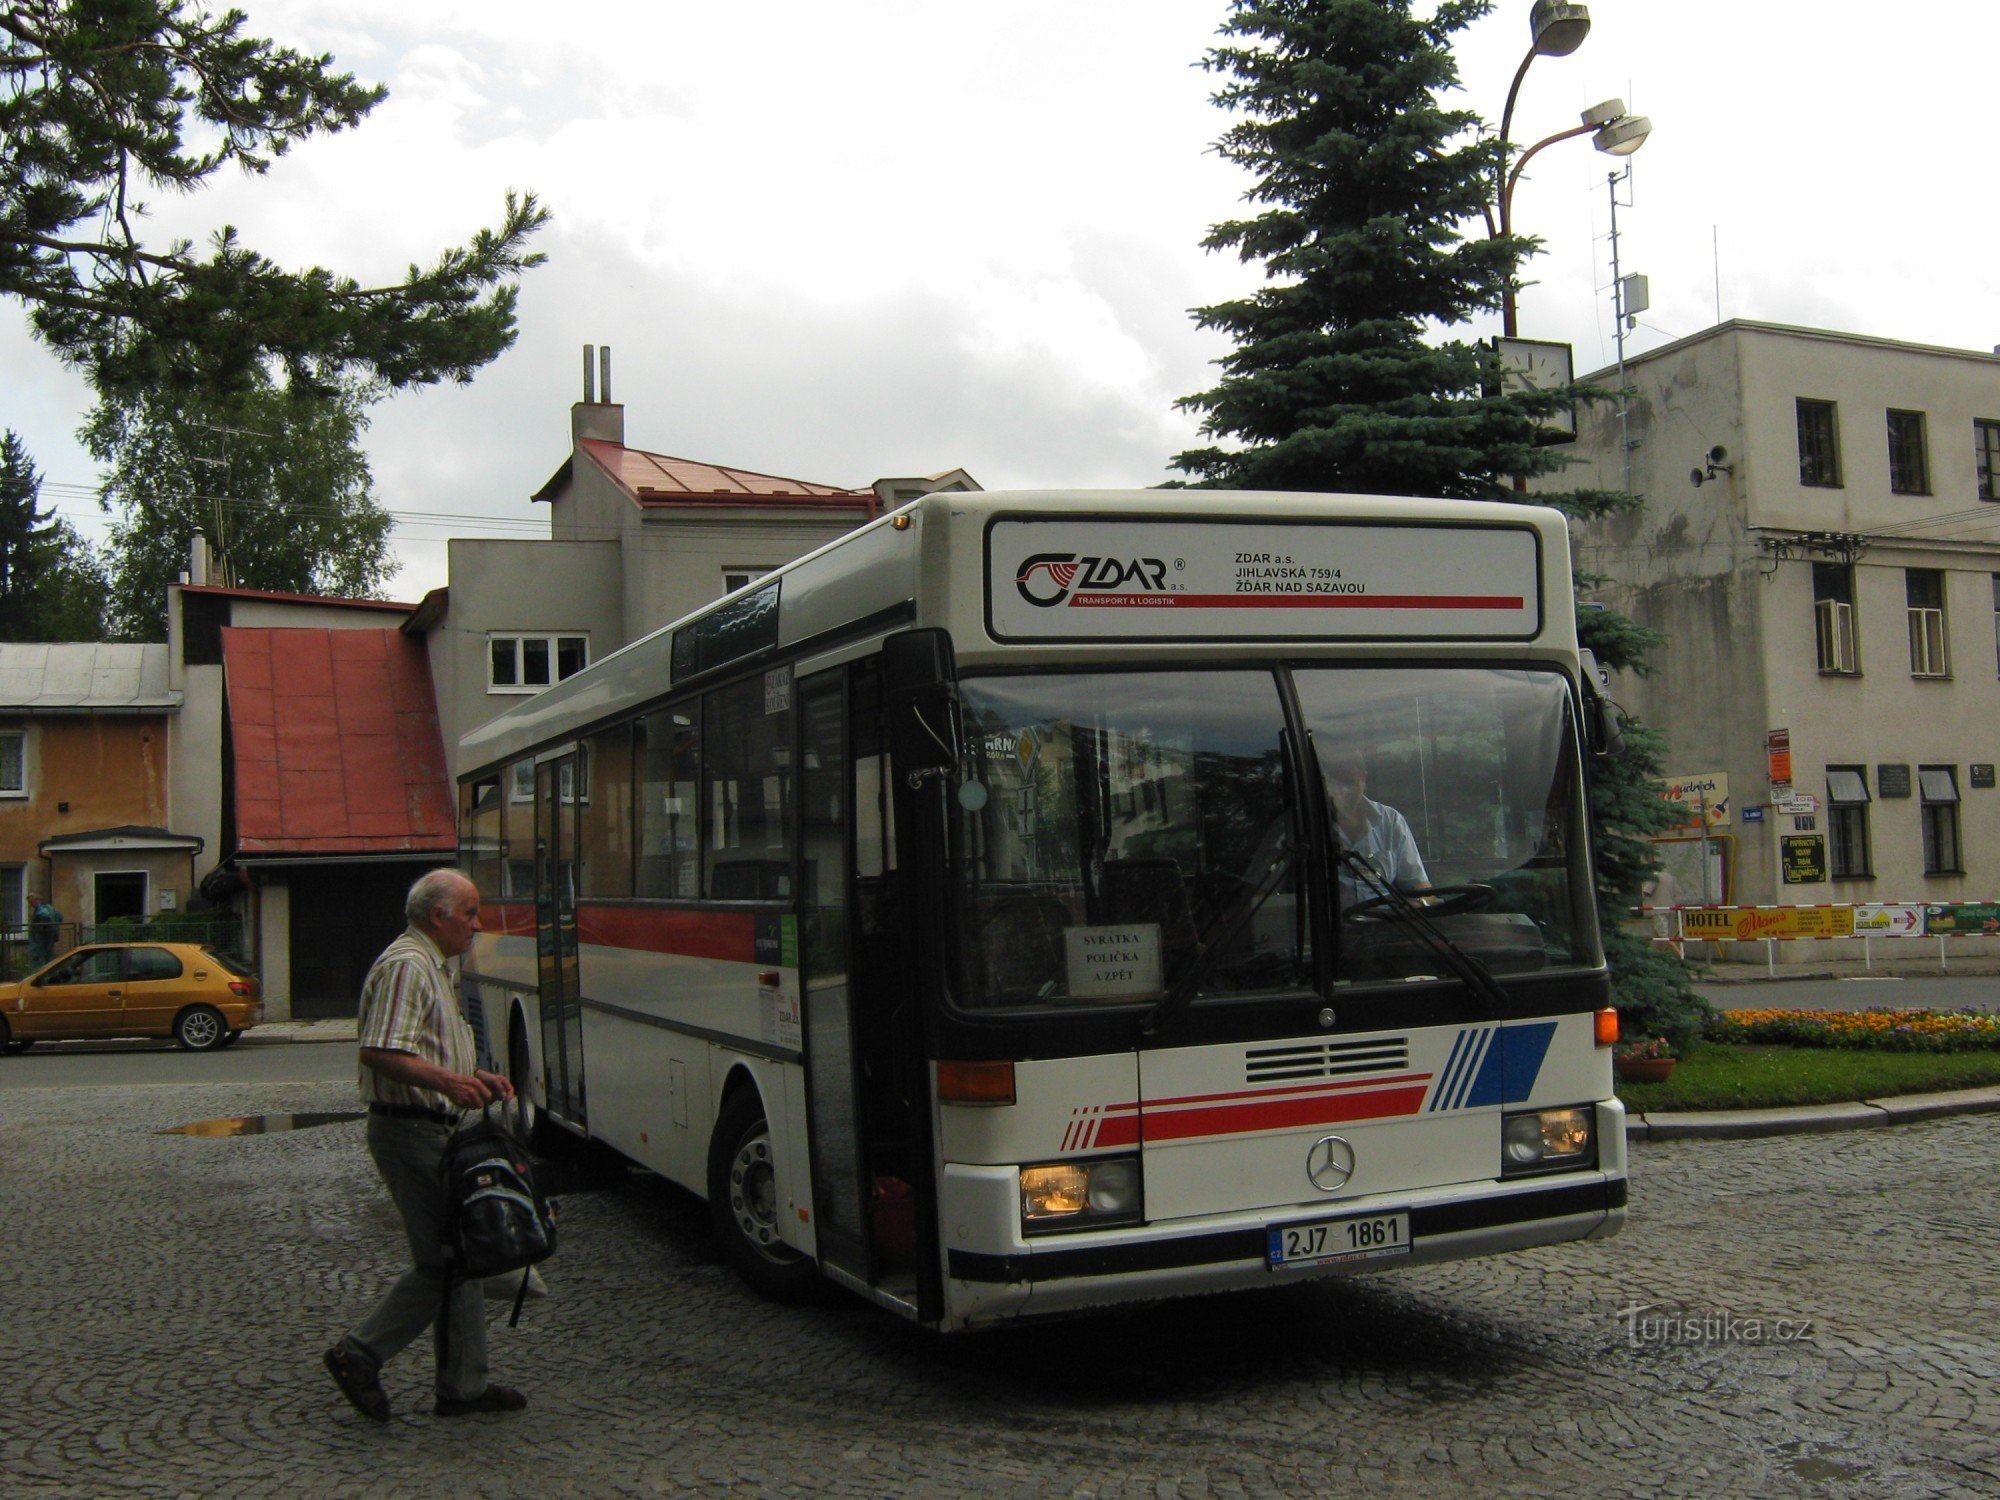 Autobus na rondzie w Svratce